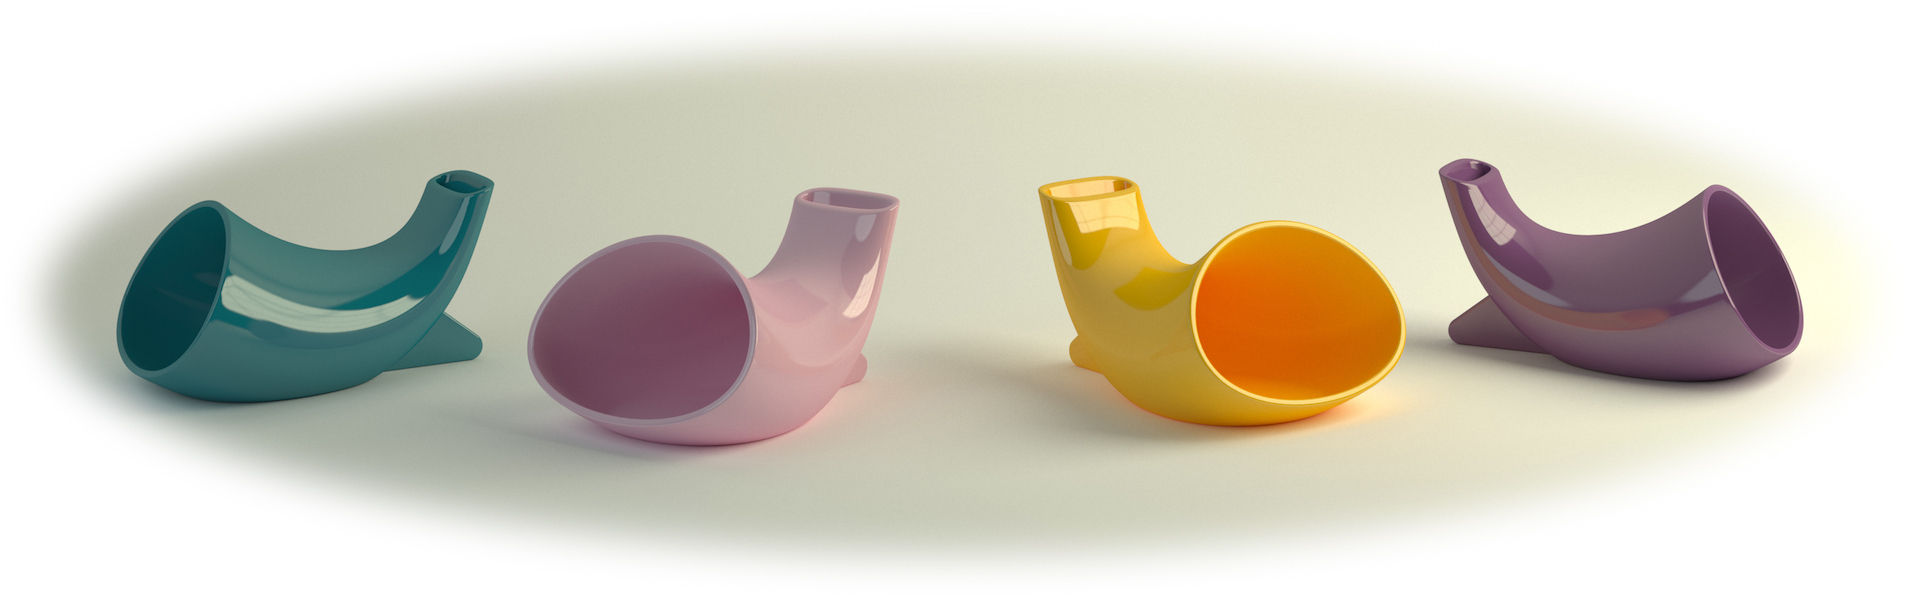 空間をおしゃれに イタリア職人による陶器製 電源不要iphoneスピーカー Megaphone Miniシリーズより 色 がポップでかわいい Colours カラーズ 4色が新登場 Megaphone Japanのプレスリリース